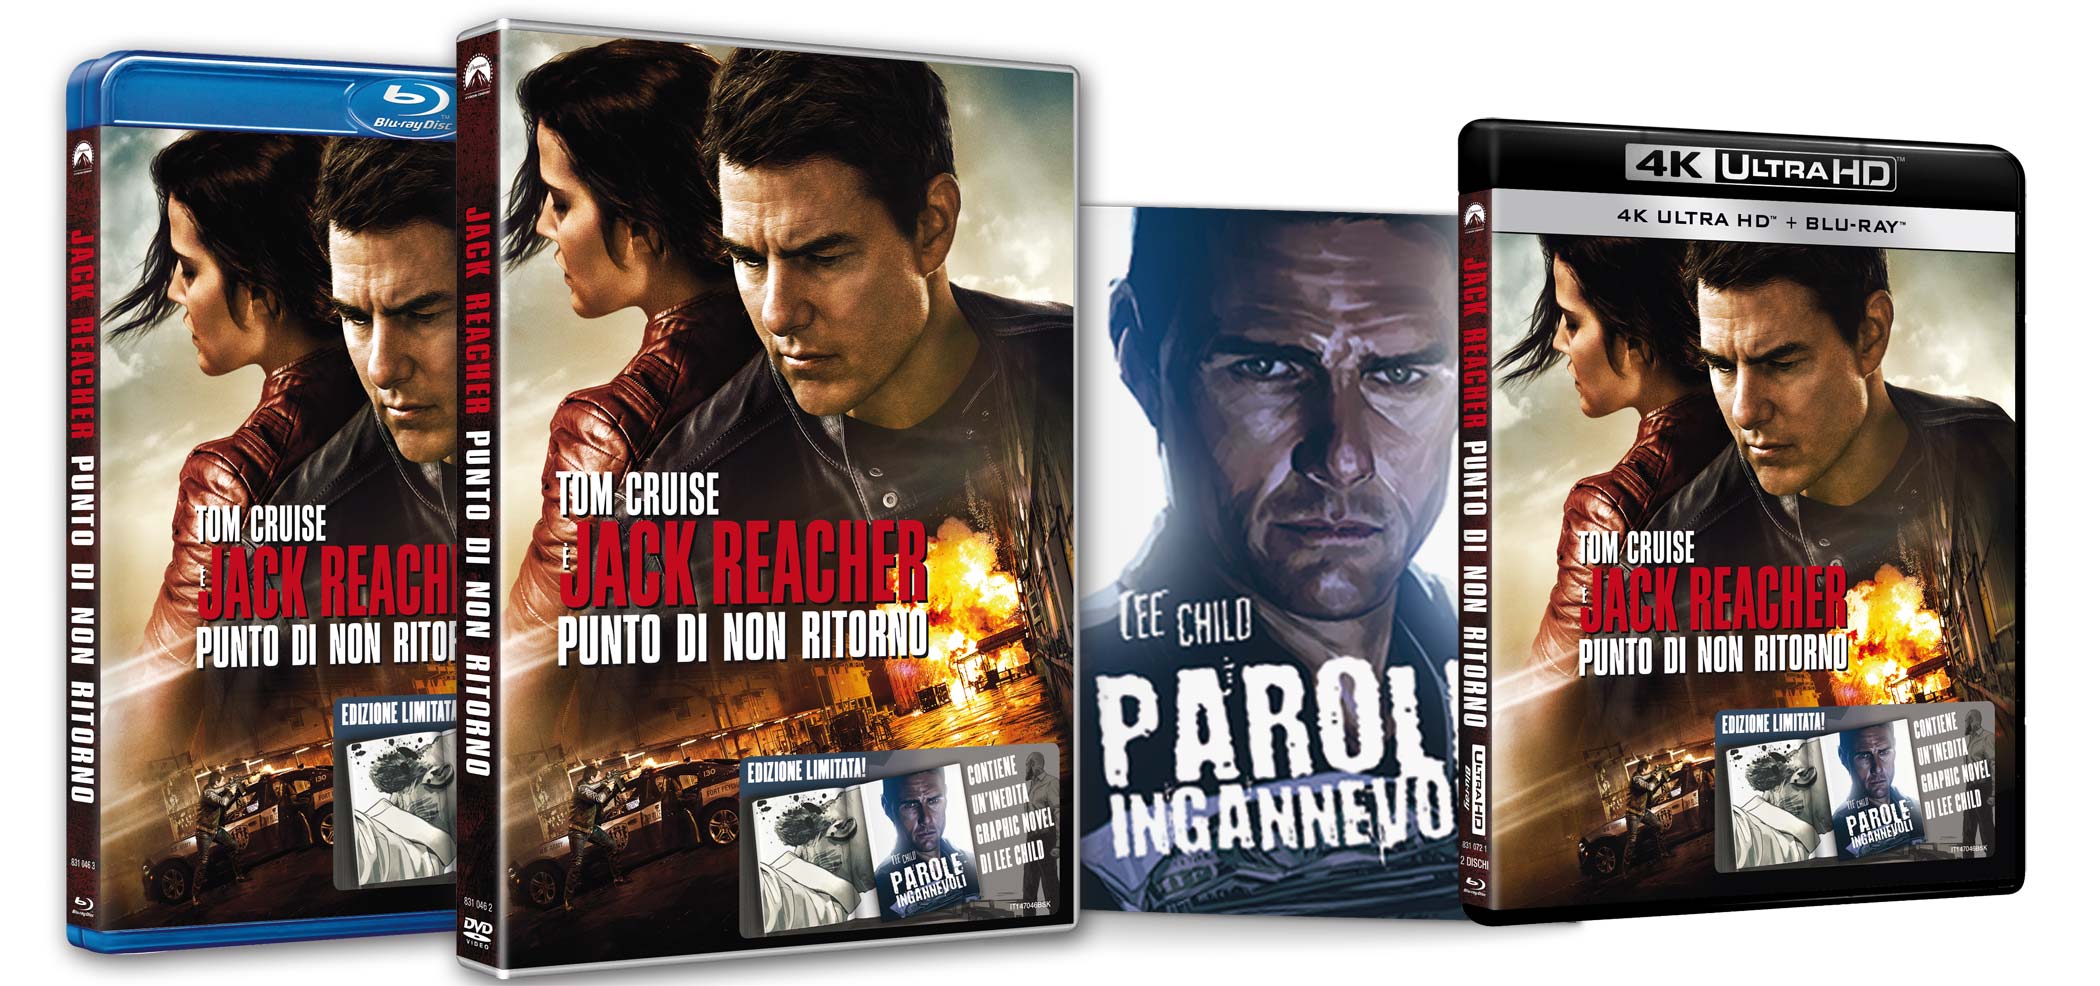 Jack Reacher - Punto di non ritorno in DVD, Blu-ray e 4k Ultra HD